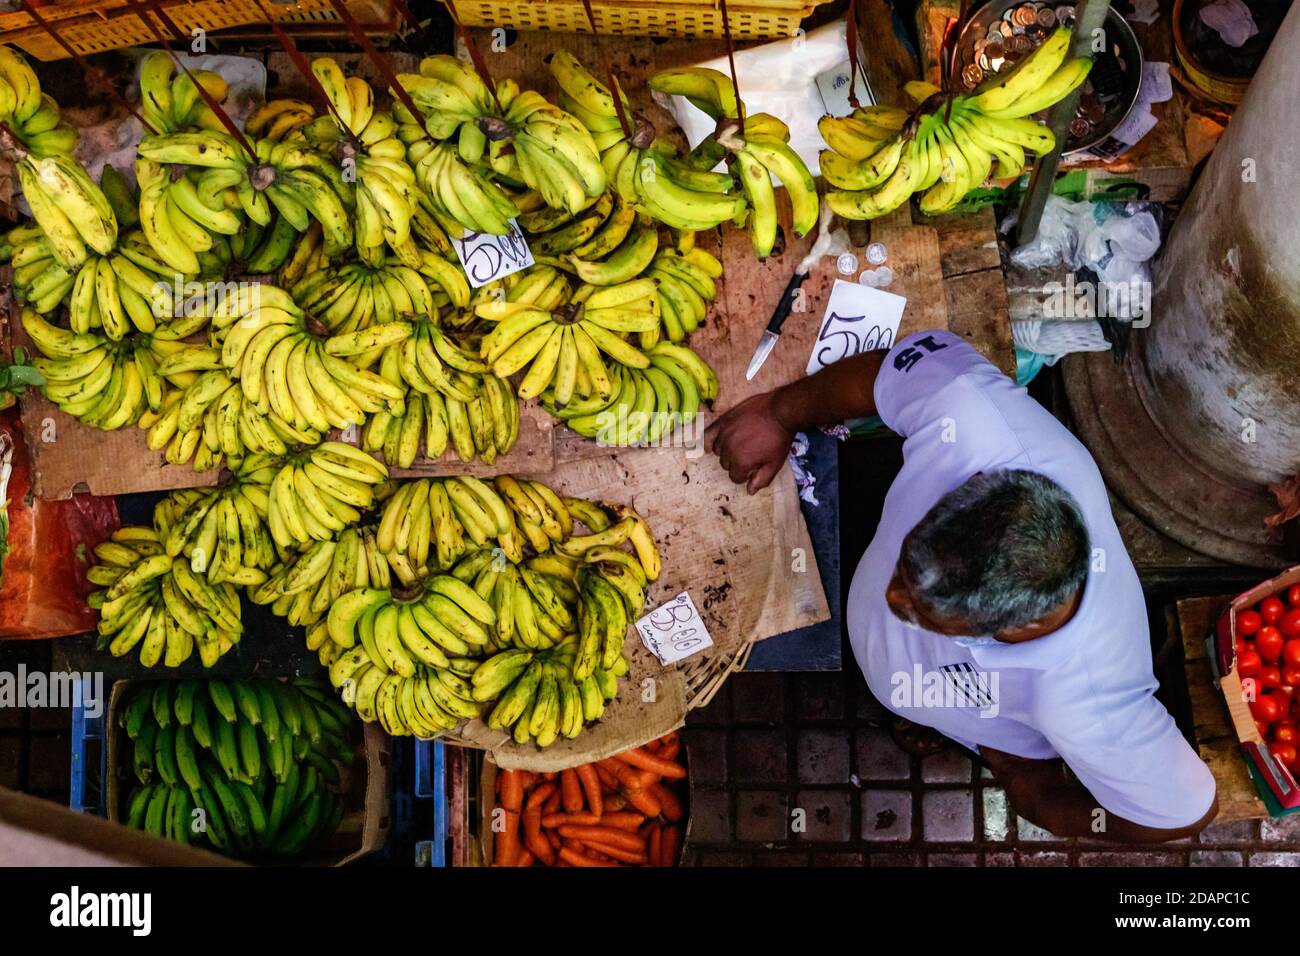 Bunte Märkte mit frischem Obst und Gemüse finden Sie Überall auf den Inseln im Indischen Ozean wie Mauritius Stockfoto